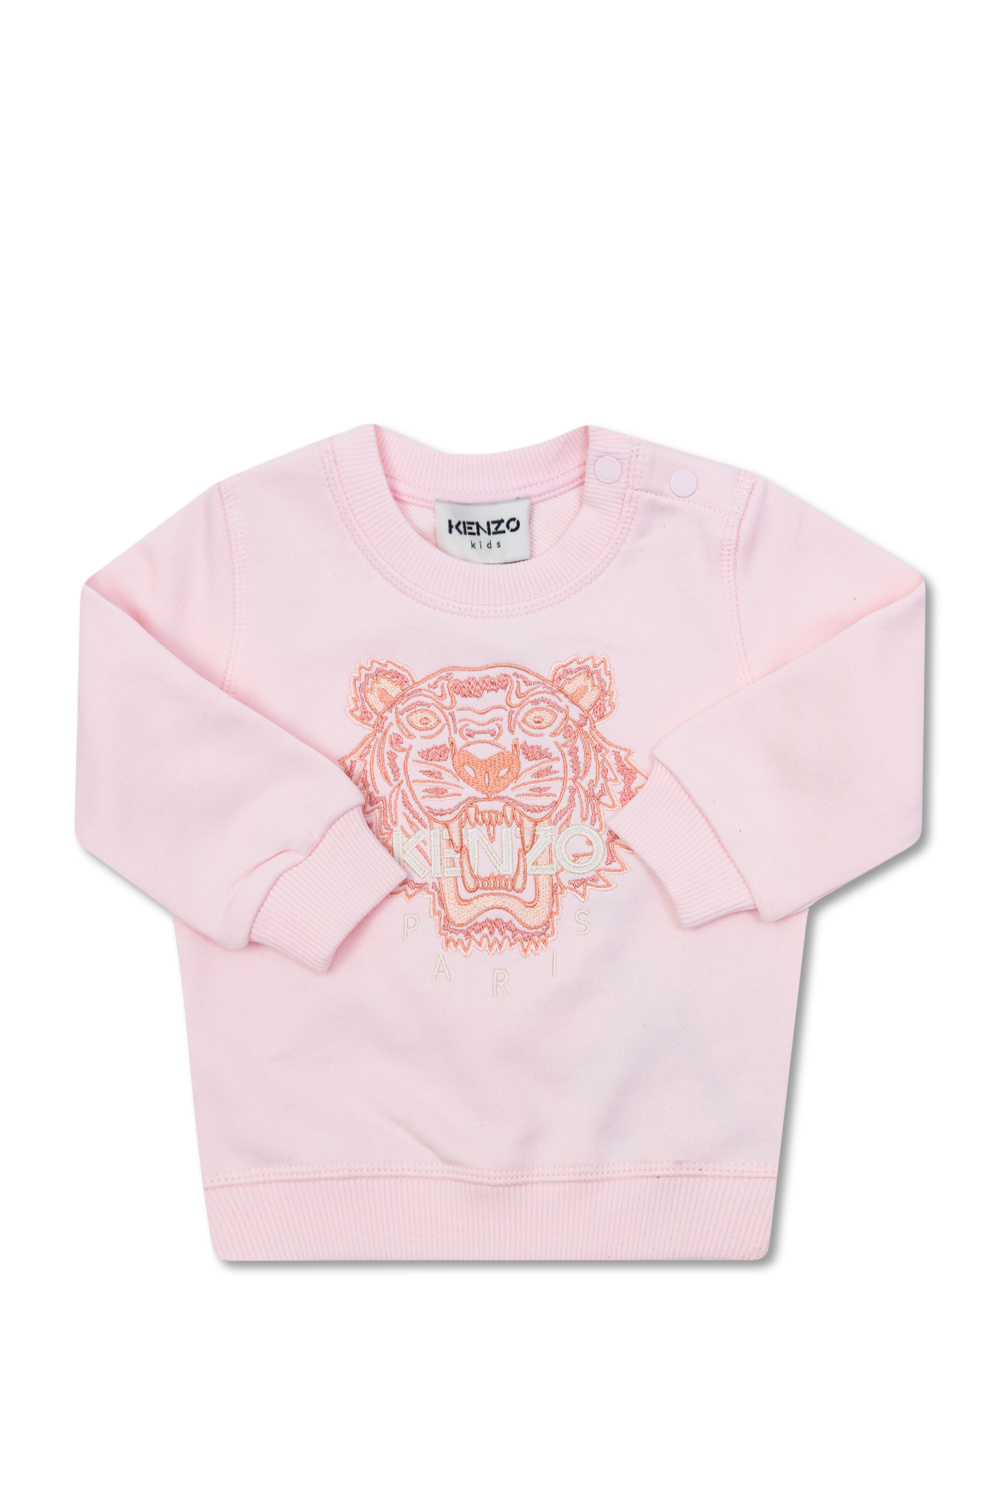 Kenzo Kids tiger-motif cotton cap - Pink